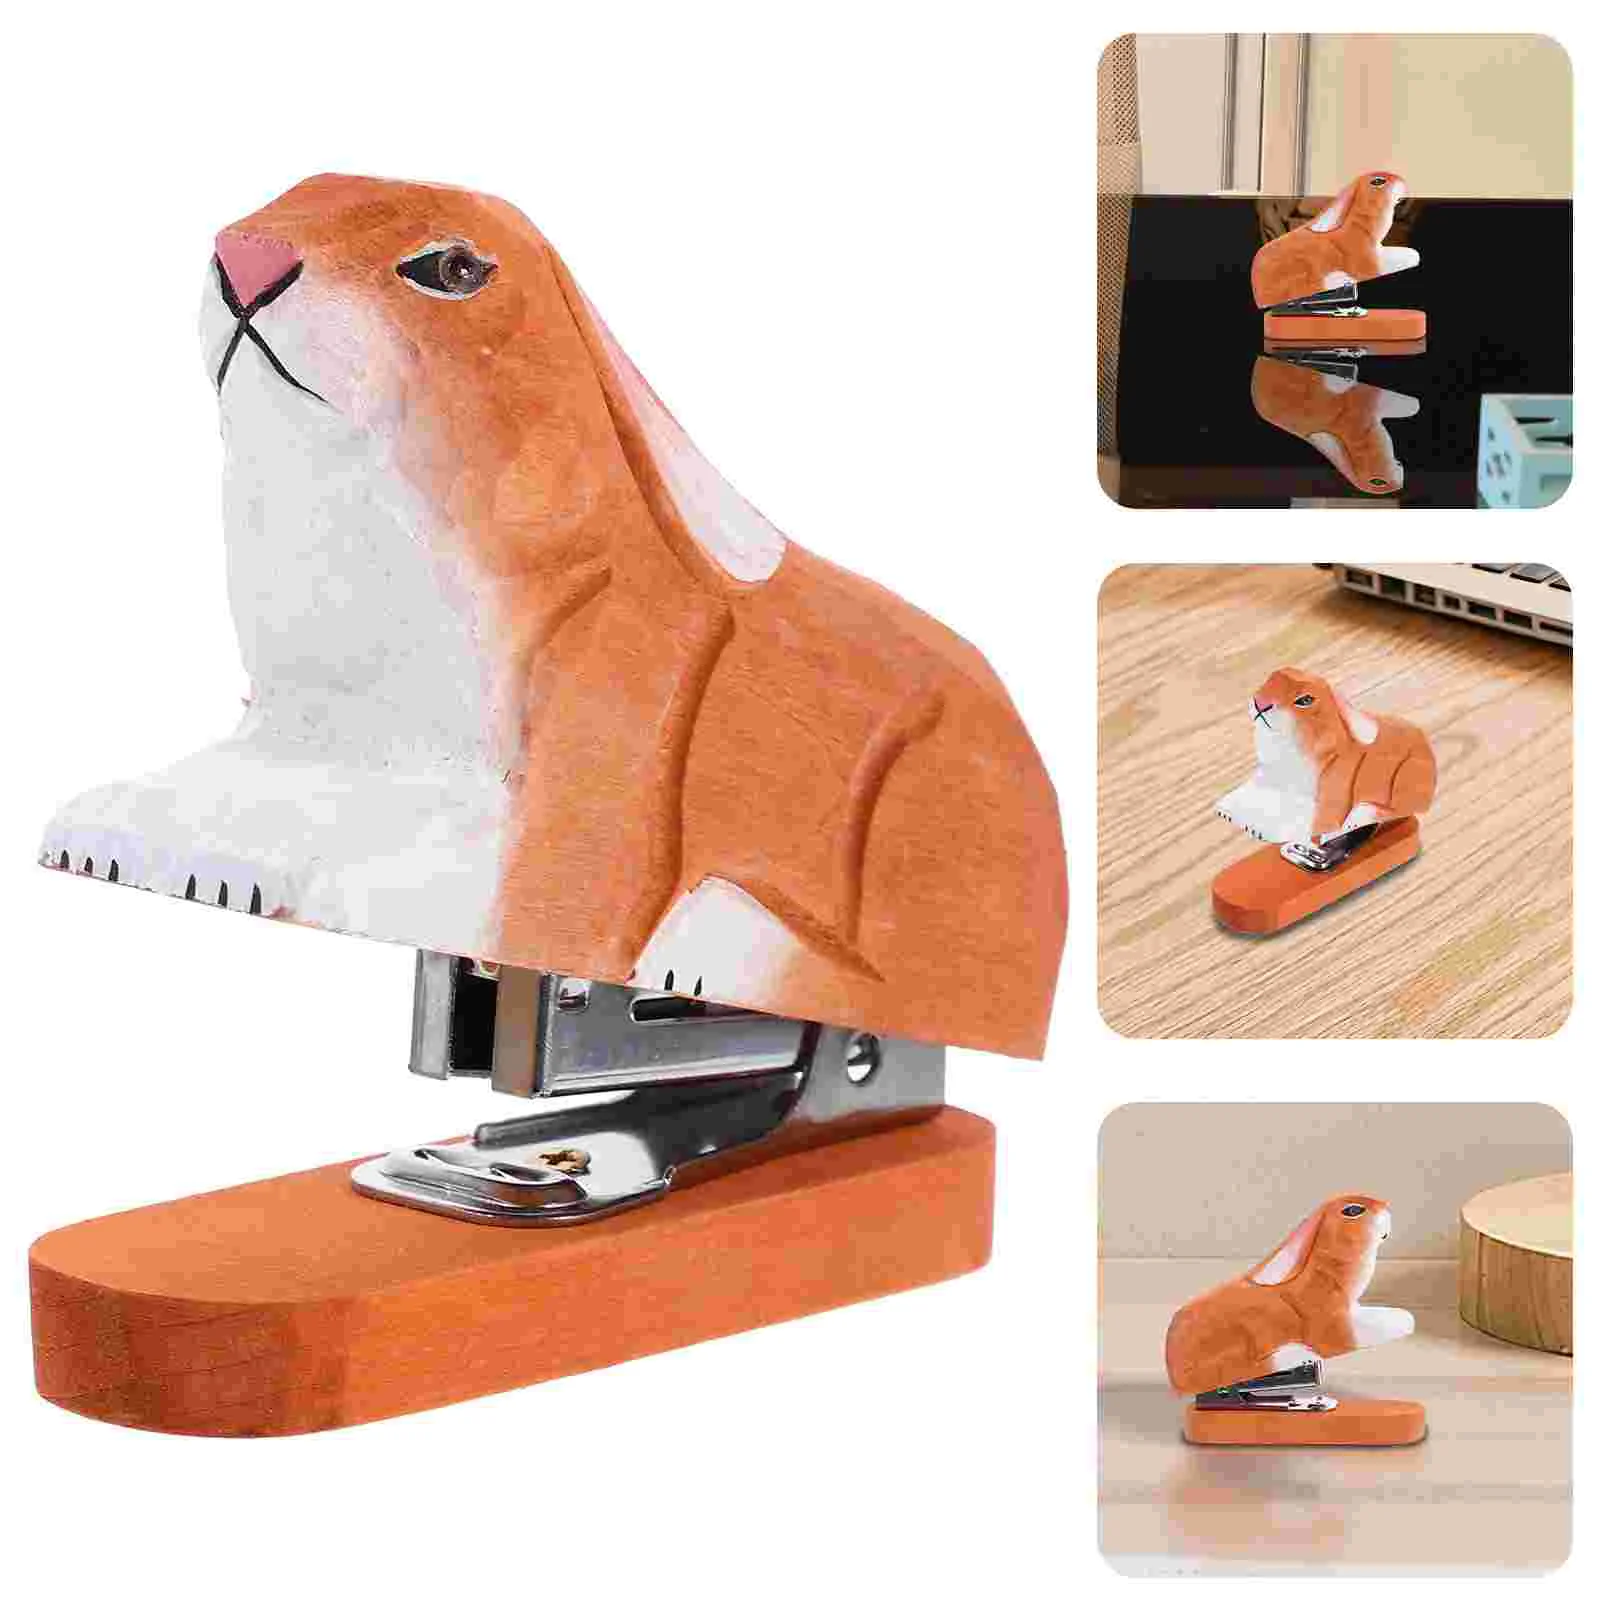 

Creative Handmade Woodcarving 3D Animal Stapler Mini Wood Stapler Desktop Decor (Random Style)